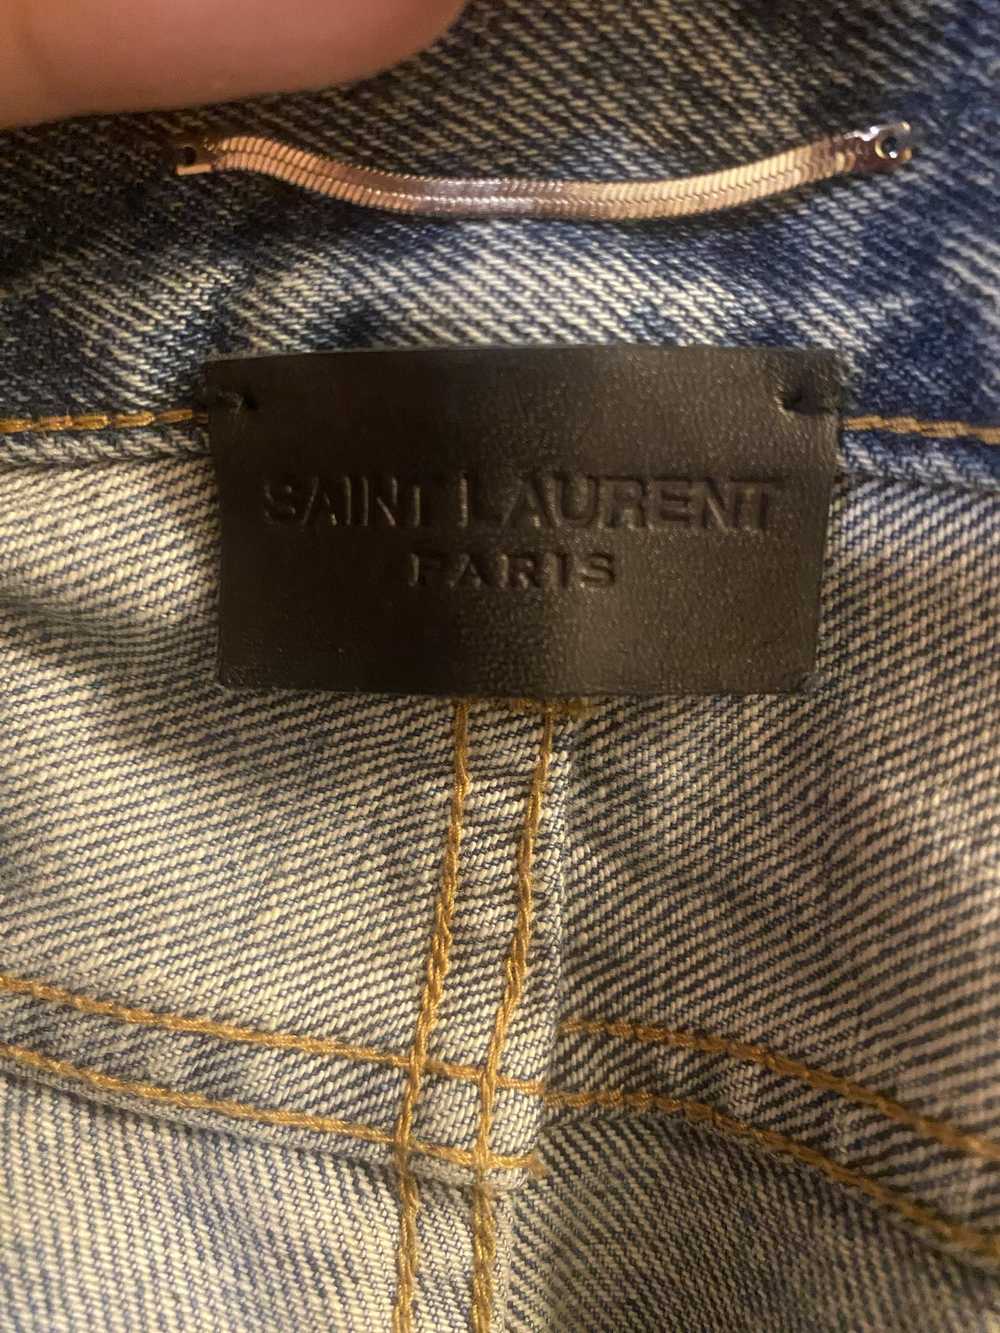 Saint Laurent Paris × Yves Saint Laurent ysl/sain… - image 7